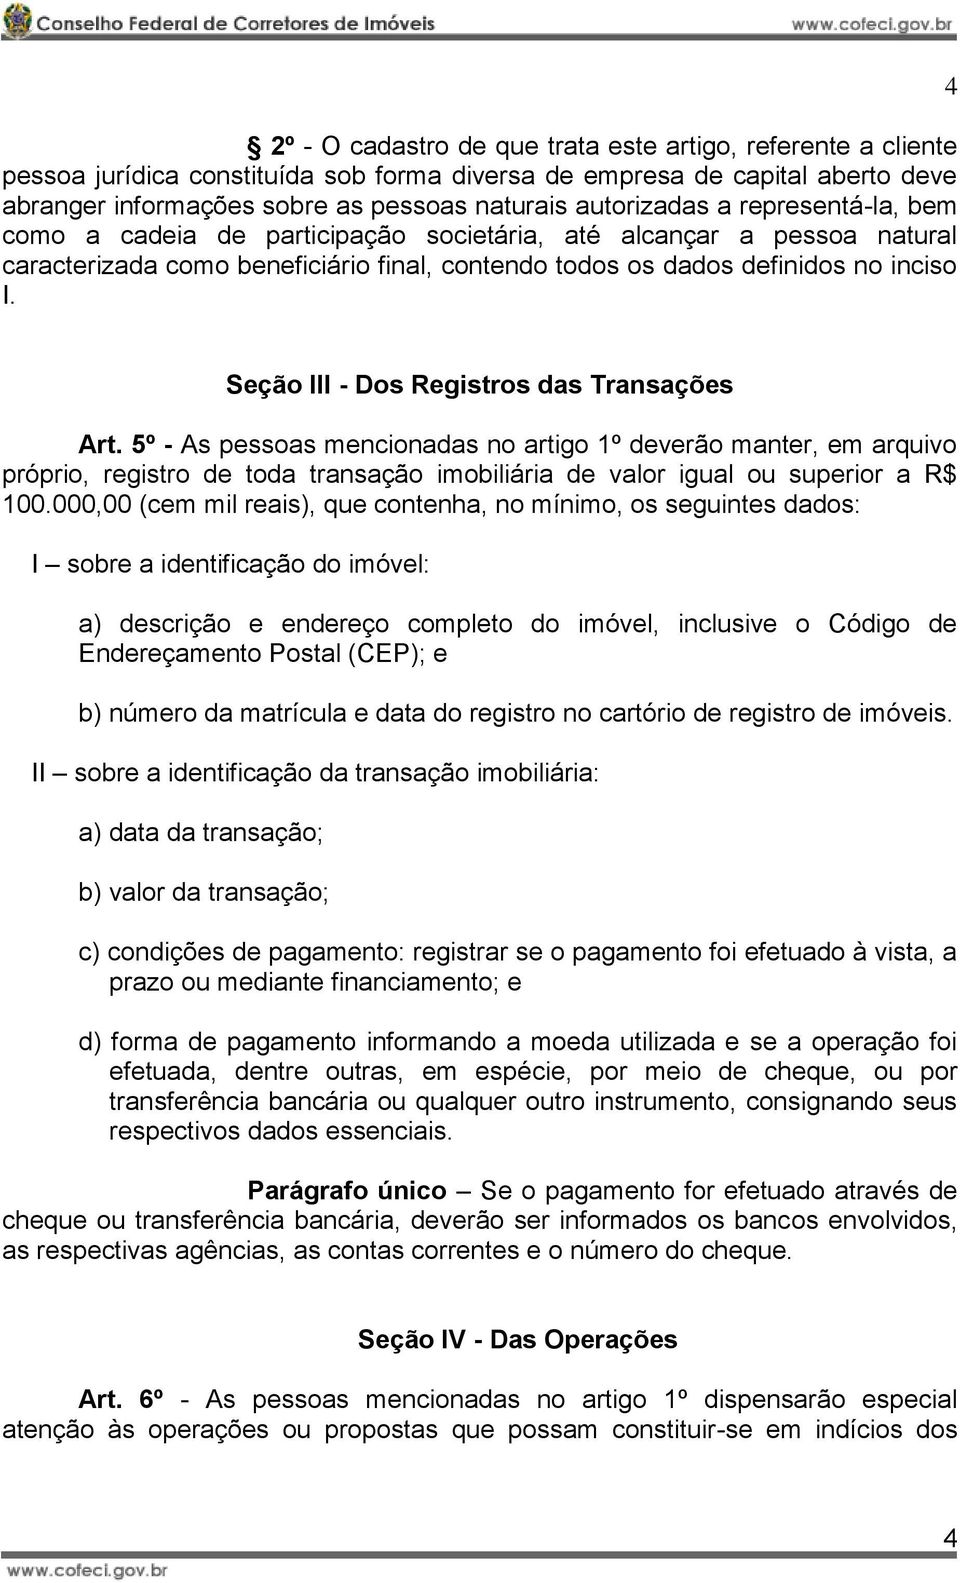 4 Seção III - Dos Registros das Transações Art. 5º - As pessoas mencionadas no artigo 1º deverão manter, em arquivo próprio, registro de toda transação imobiliária de valor igual ou superior a R$ 100.